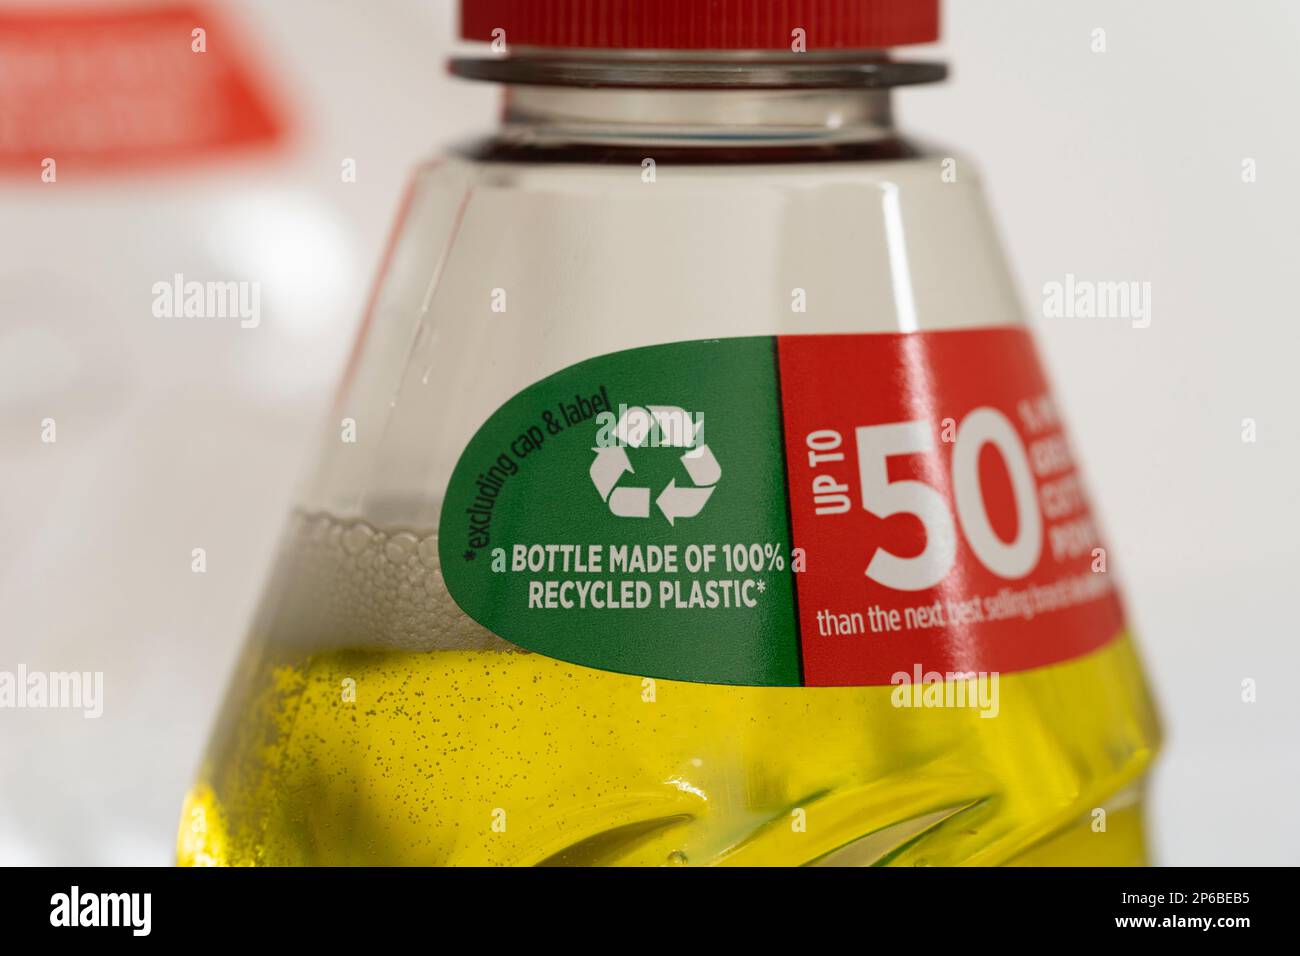 Le liquide vaisselle fée avec une étiquette indiquant la bouteille est fabriqué à 100 % en plastique recyclé, faisant la promotion des qualités écologiques de Procter & Gamble Banque D'Images